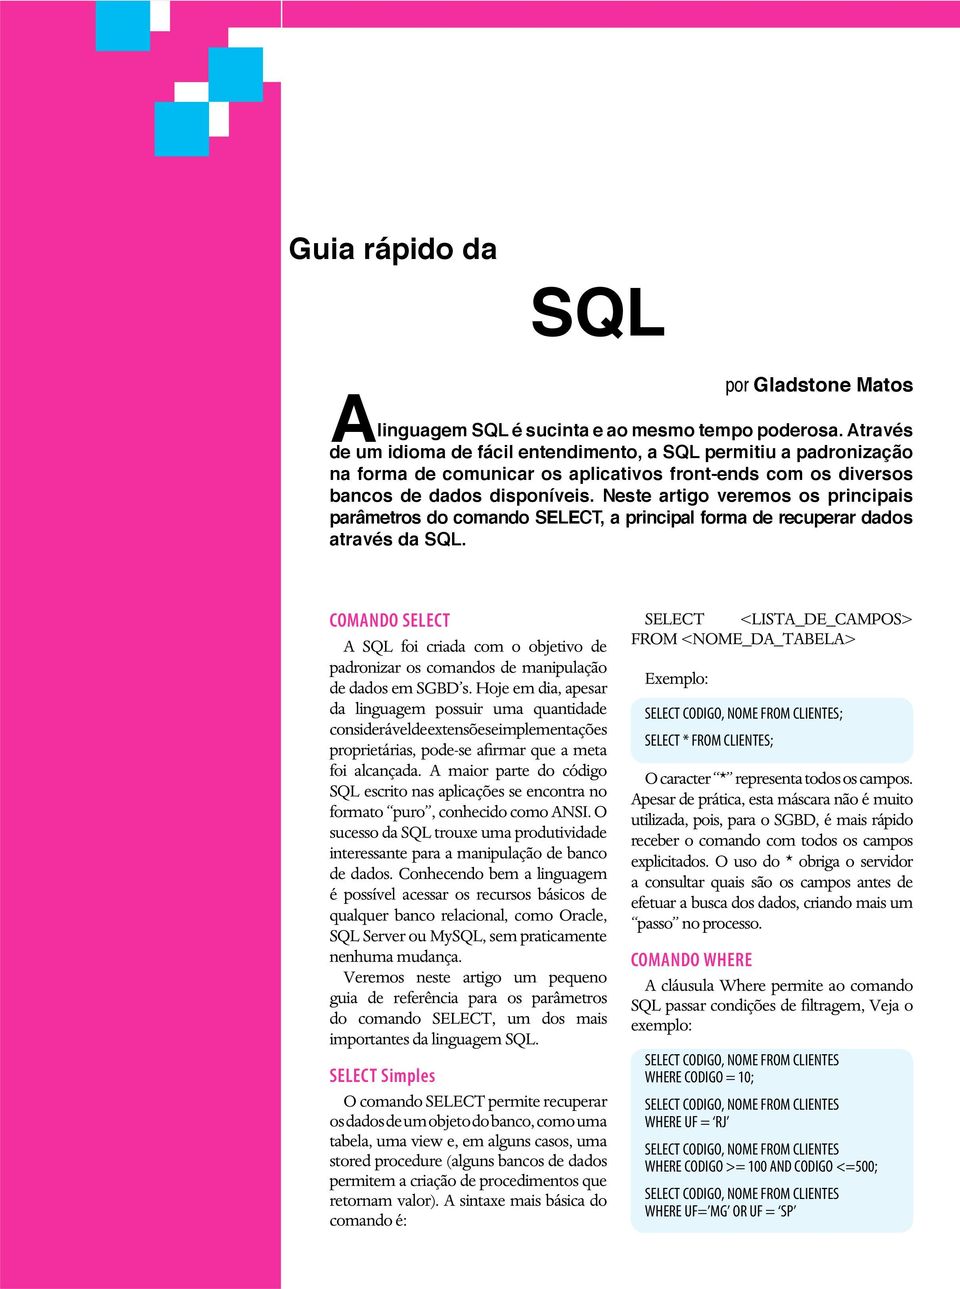 Neste artigo veremos os principais parâmetros do comando SELECT, a principal forma de recuperar dados através da SQL.